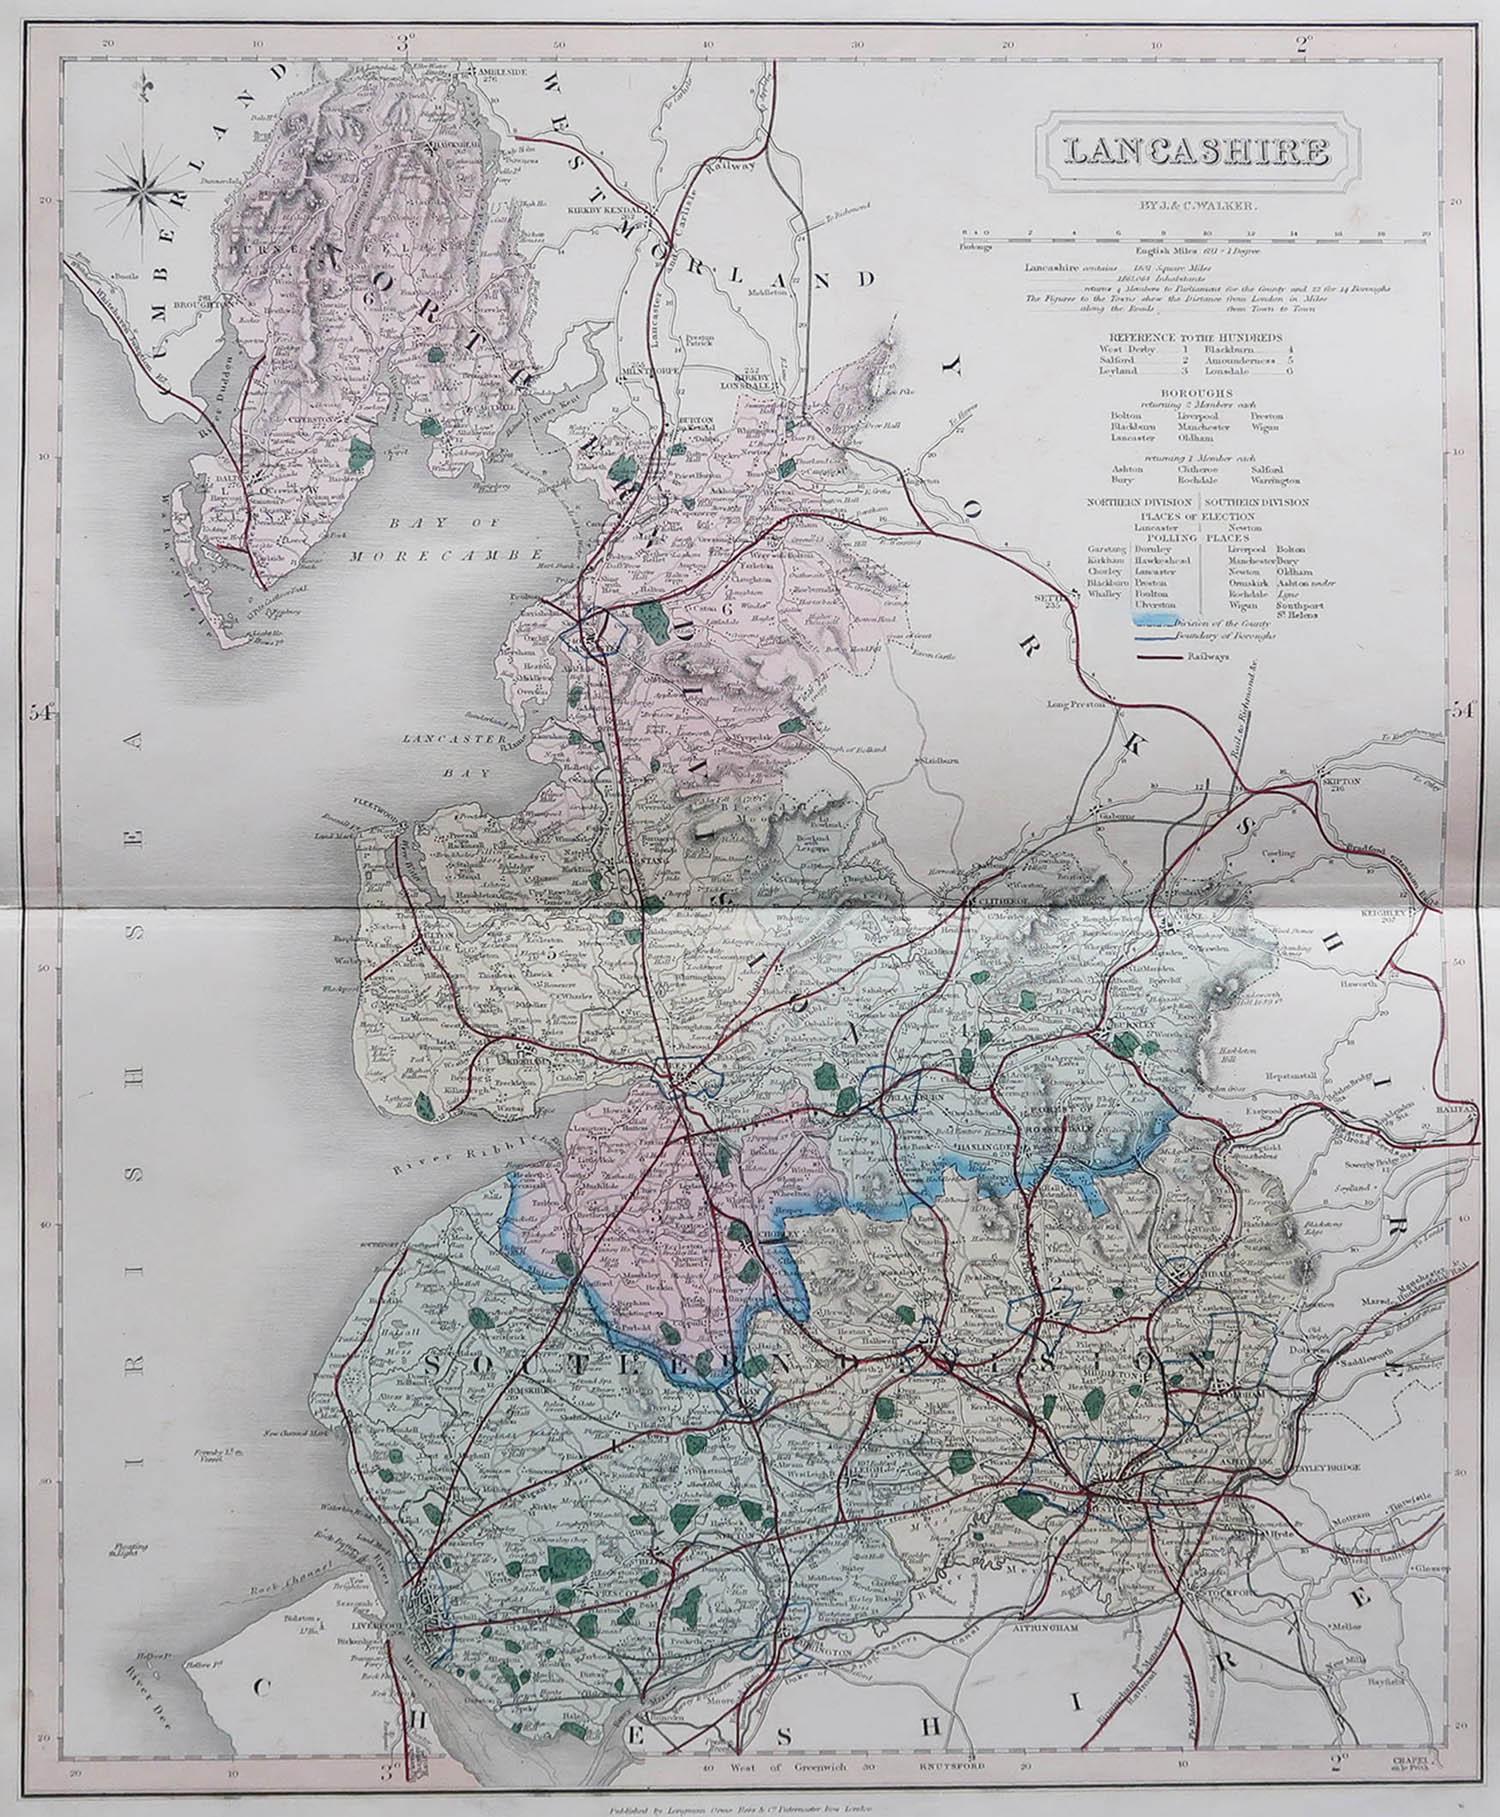 Großartige Karte von Lancashire

Original Farbe

Von J & C Walker

Veröffentlicht von Longman, Rees, Orme, Brown & Co. 1851

Ungerahmt.




